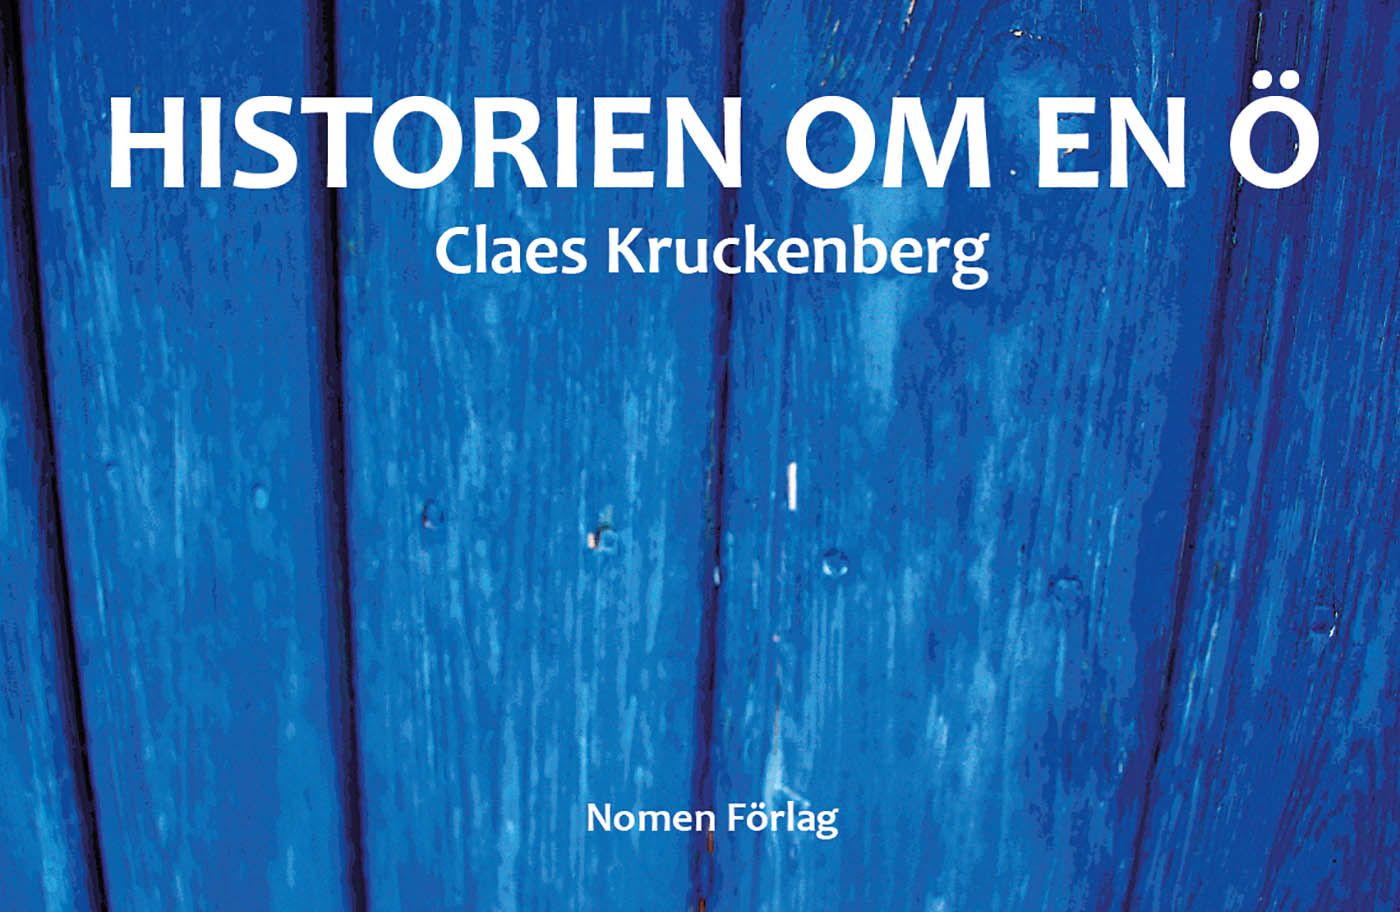 Historien om en ö, e-bog af Claes Kruckenberg